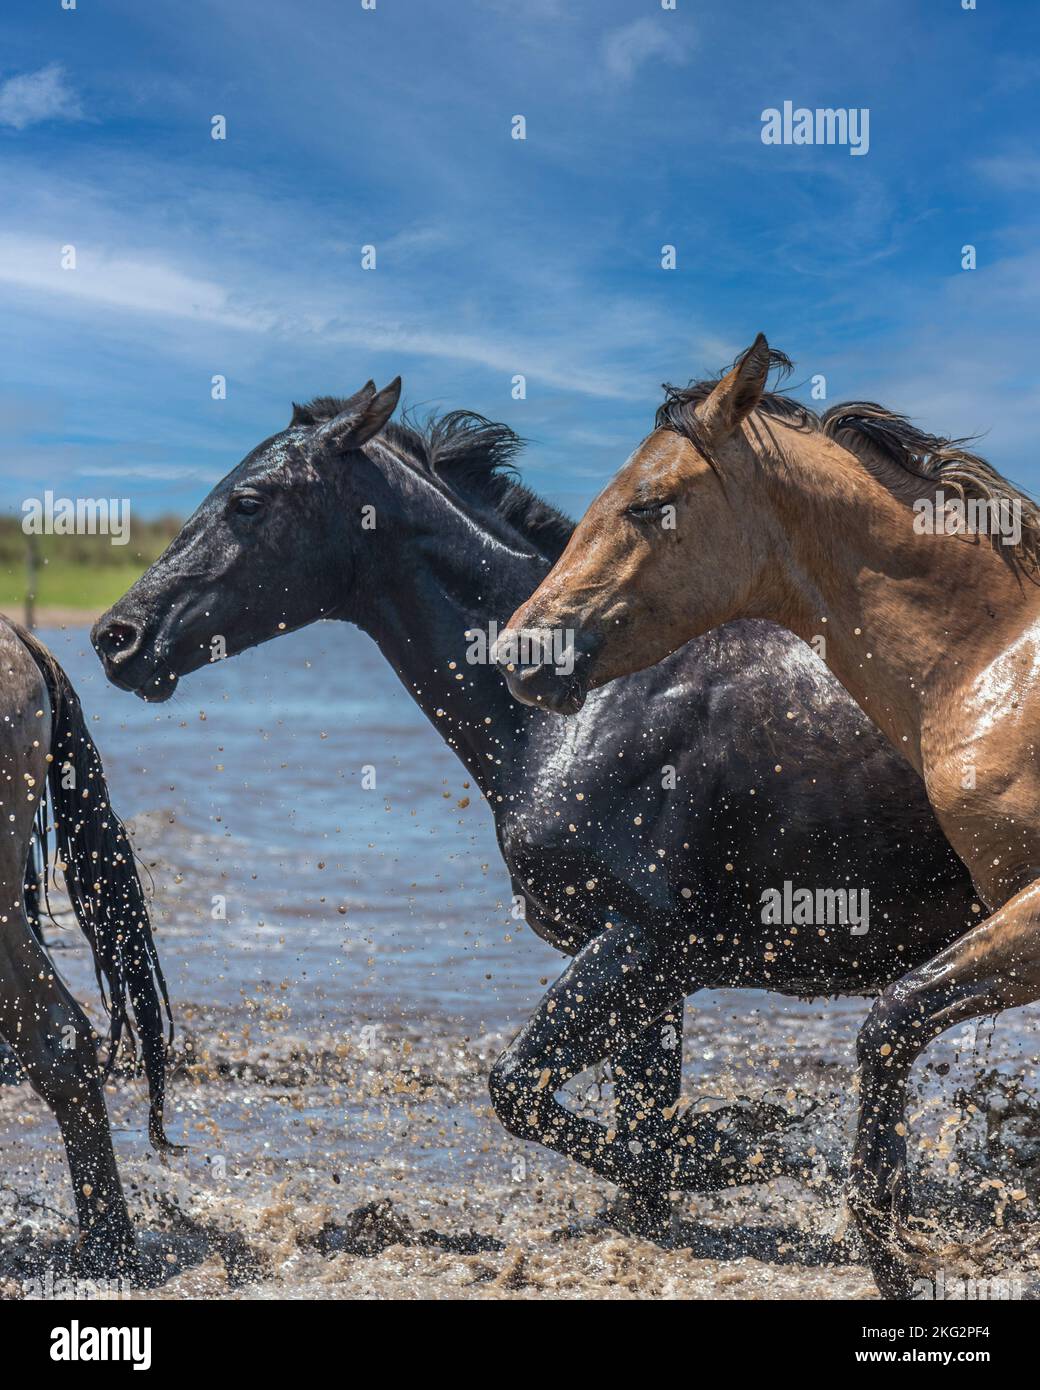 Photo verticale de deux chevaux sauvages, un brun et un noir, traversant une rivière. Banque D'Images